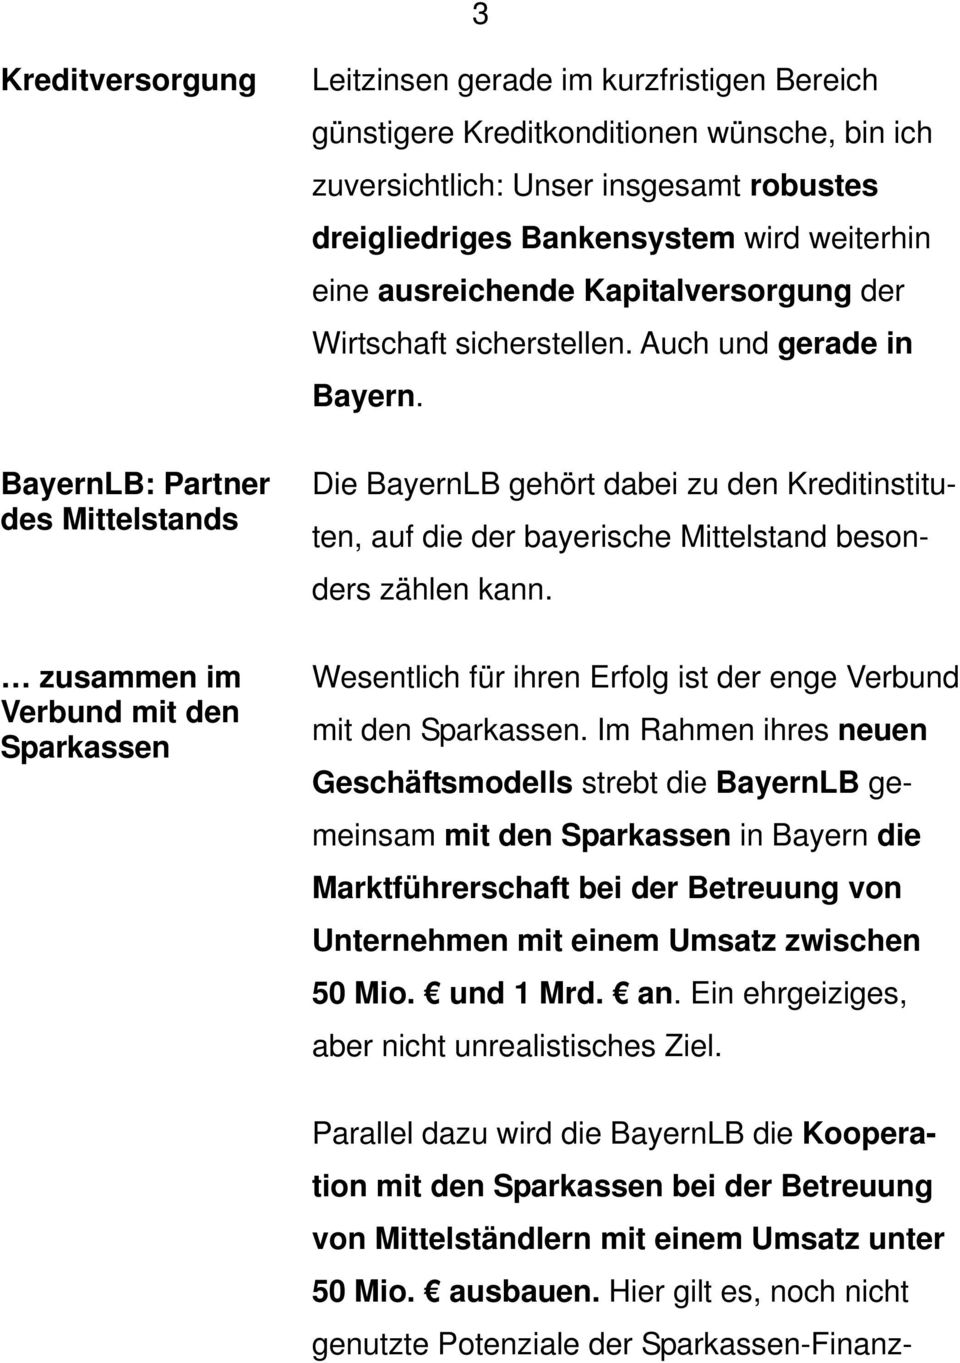 BayernLB: Partner des Mittelstands Die BayernLB gehört dabei zu den Kreditinstituten, auf die der bayerische Mittelstand besonders zählen kann.